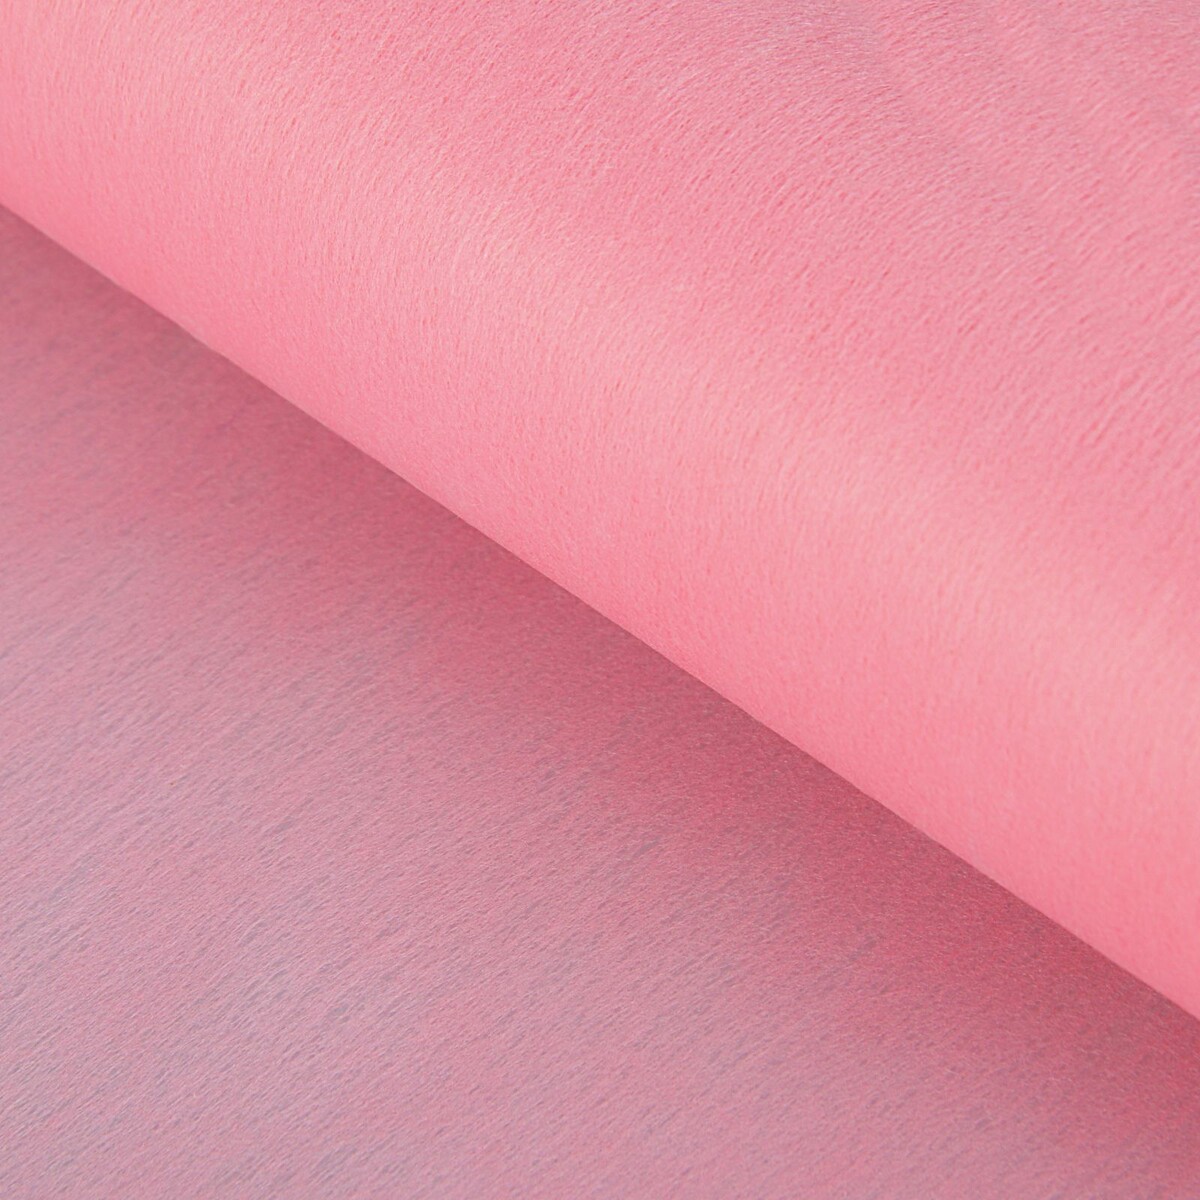 Фетр для упаковок и поделок, однотонный, розовый, двусторонний, рулон 1шт., 0,5 x 15 м